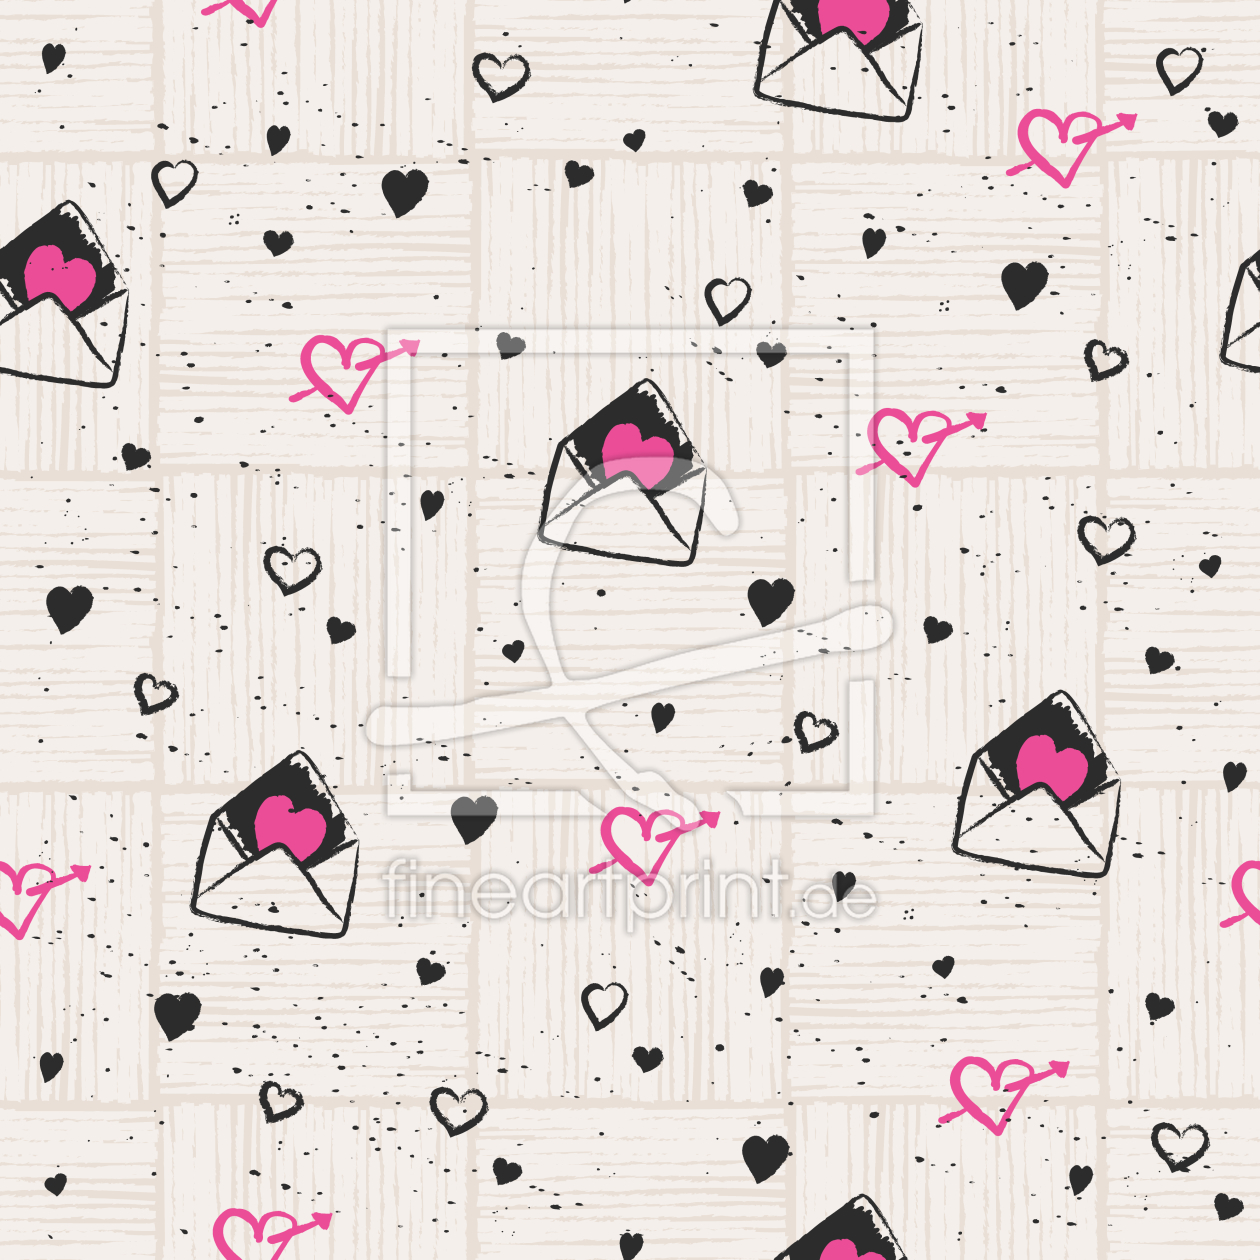 Bild-Nr.: 9009122 Herzige Liebesbriefe erstellt von patterndesigns-com